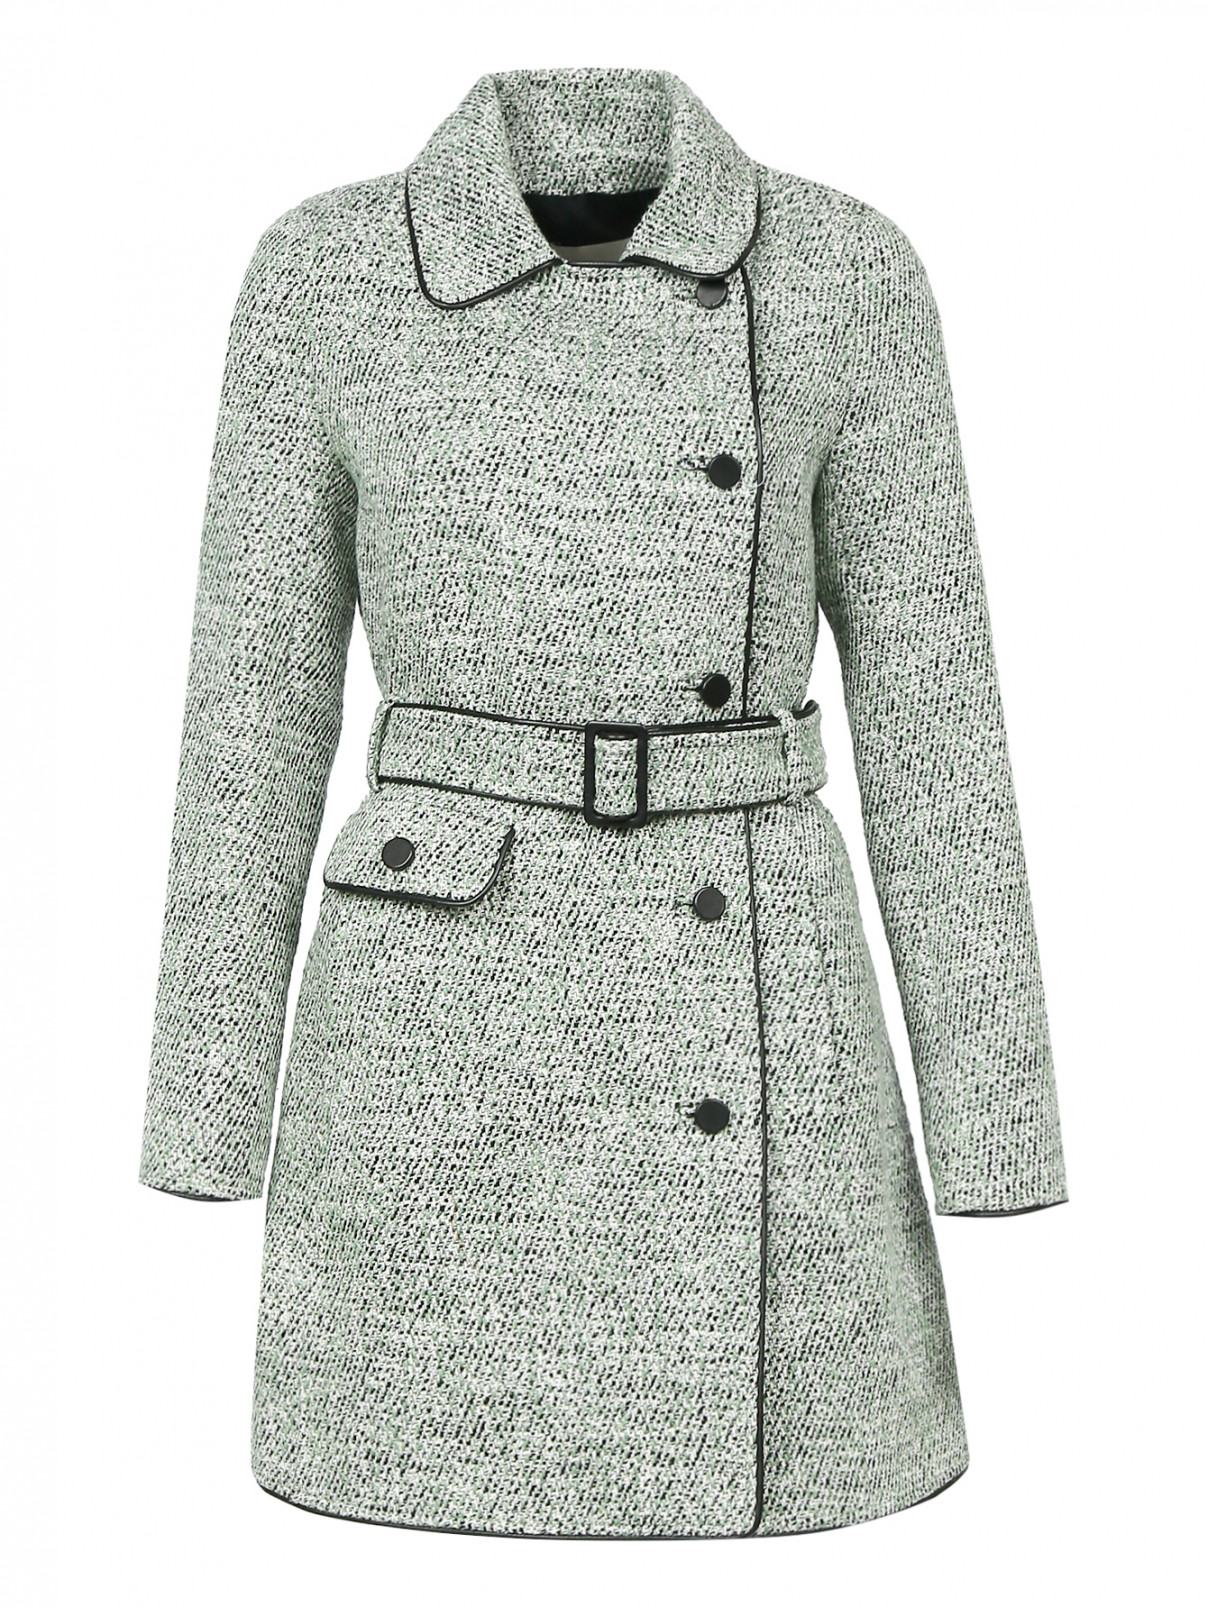 Пальто с узором и контрастной отделкой Yves Salomon  –  Общий вид  – Цвет:  Зеленый